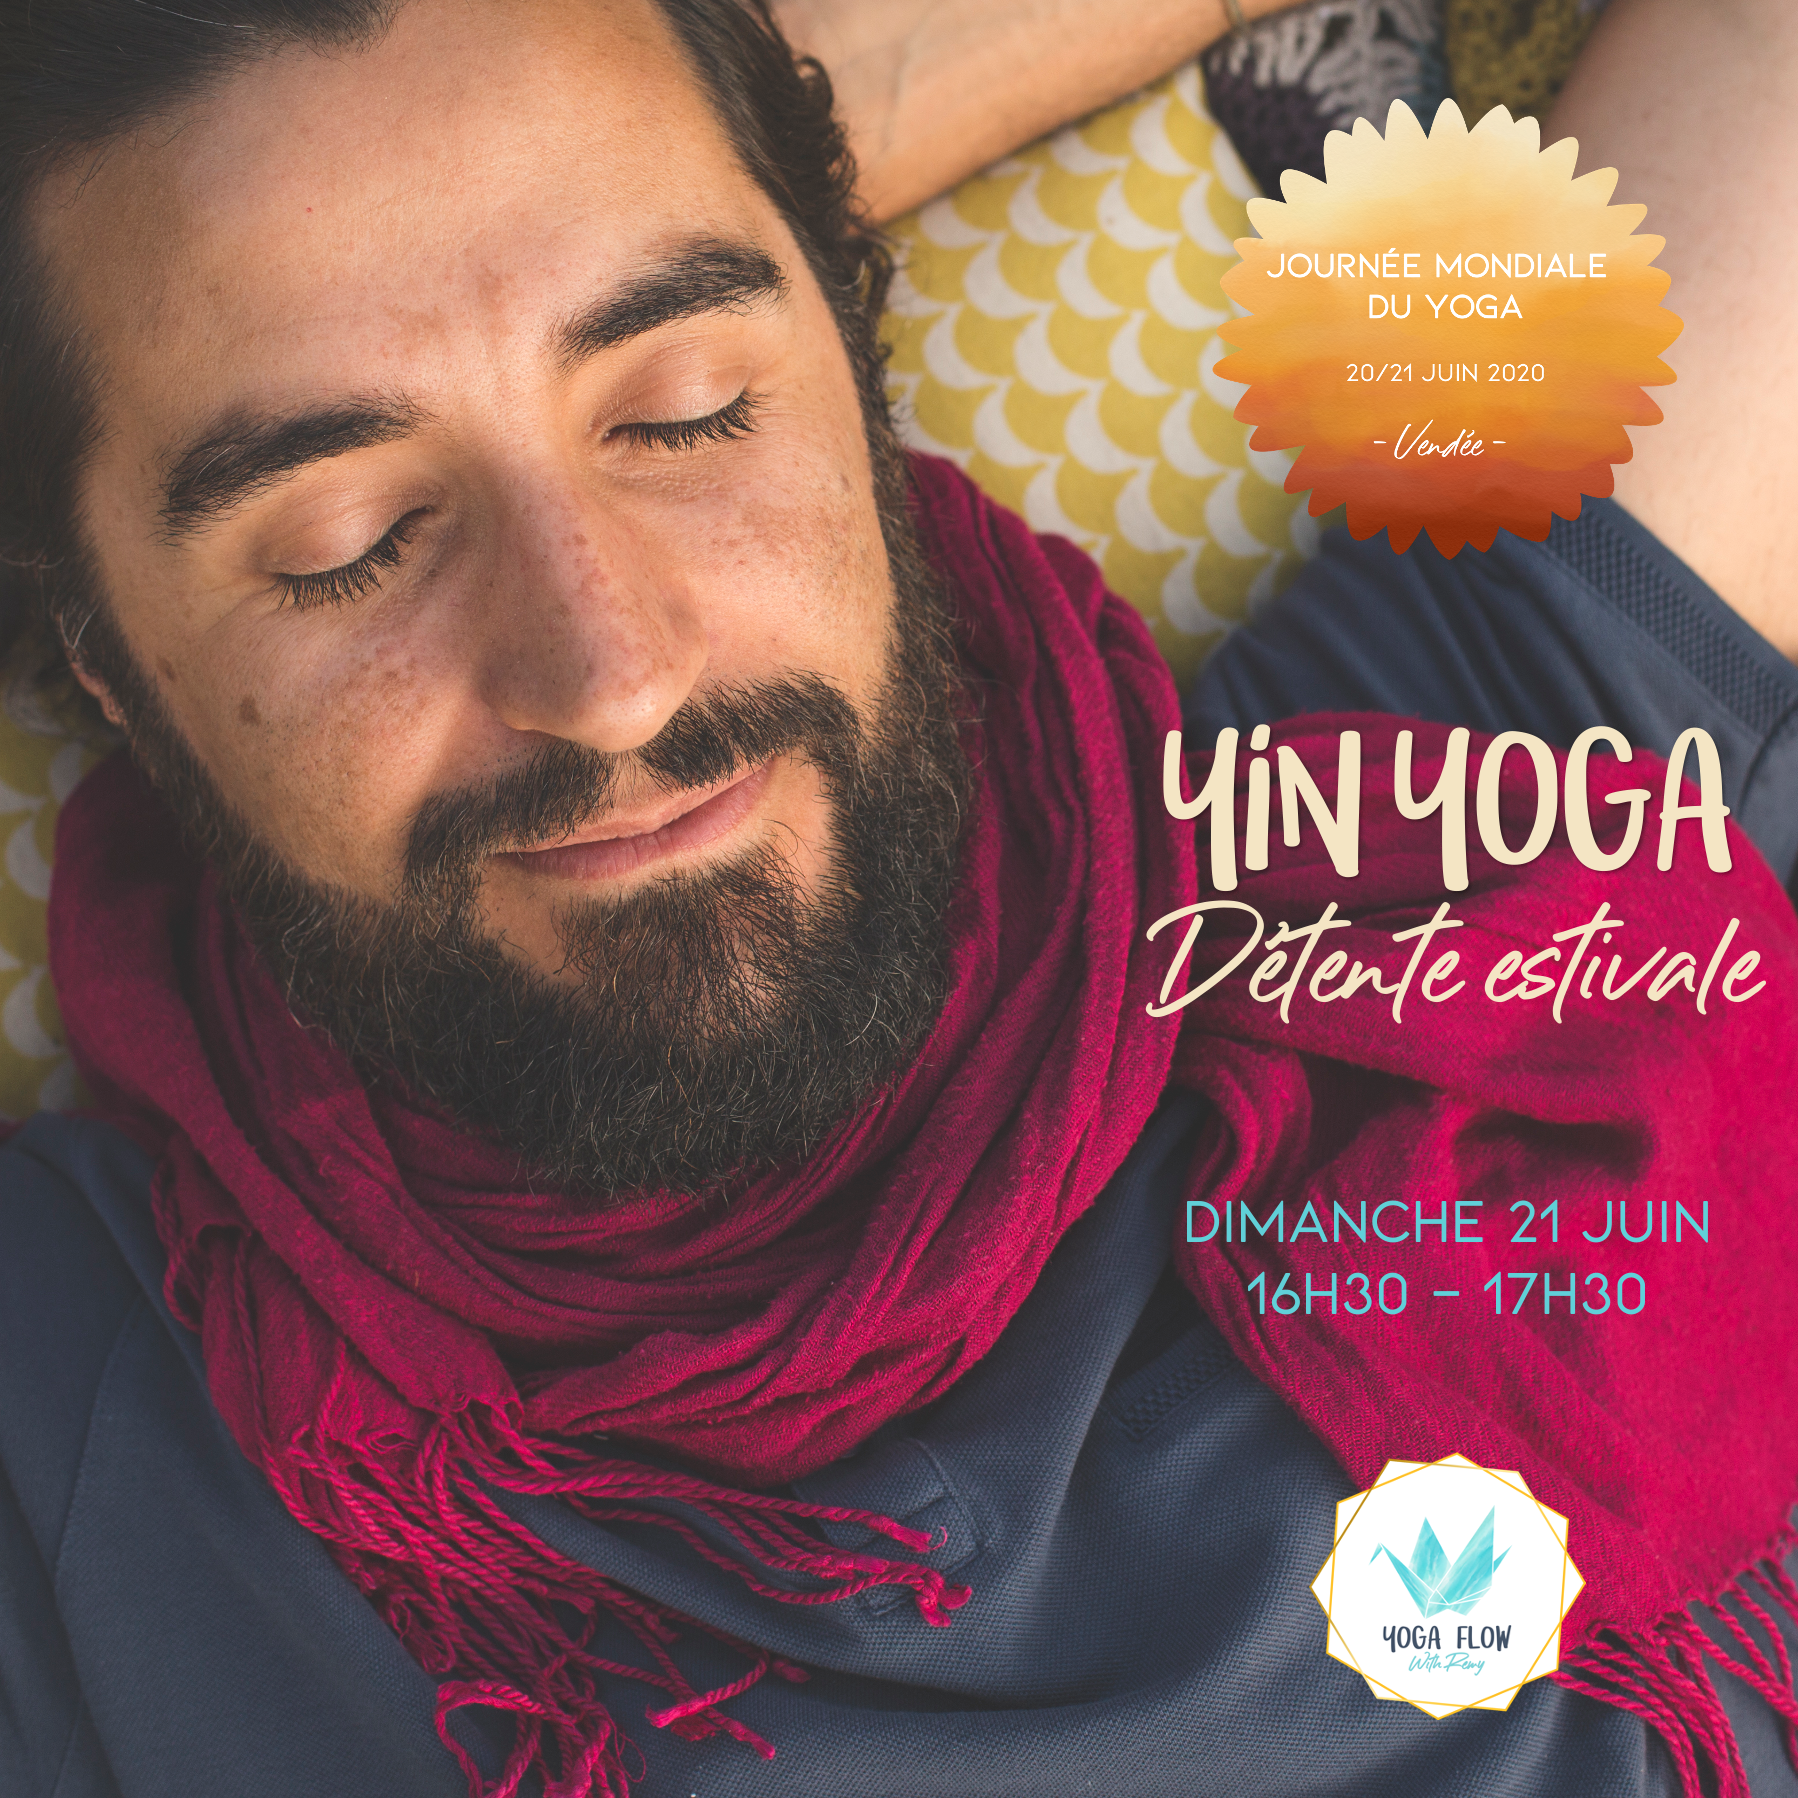 Journée mondiale du yoga 2020, Atelier de yin yoga par Yoga Flow with Rémy